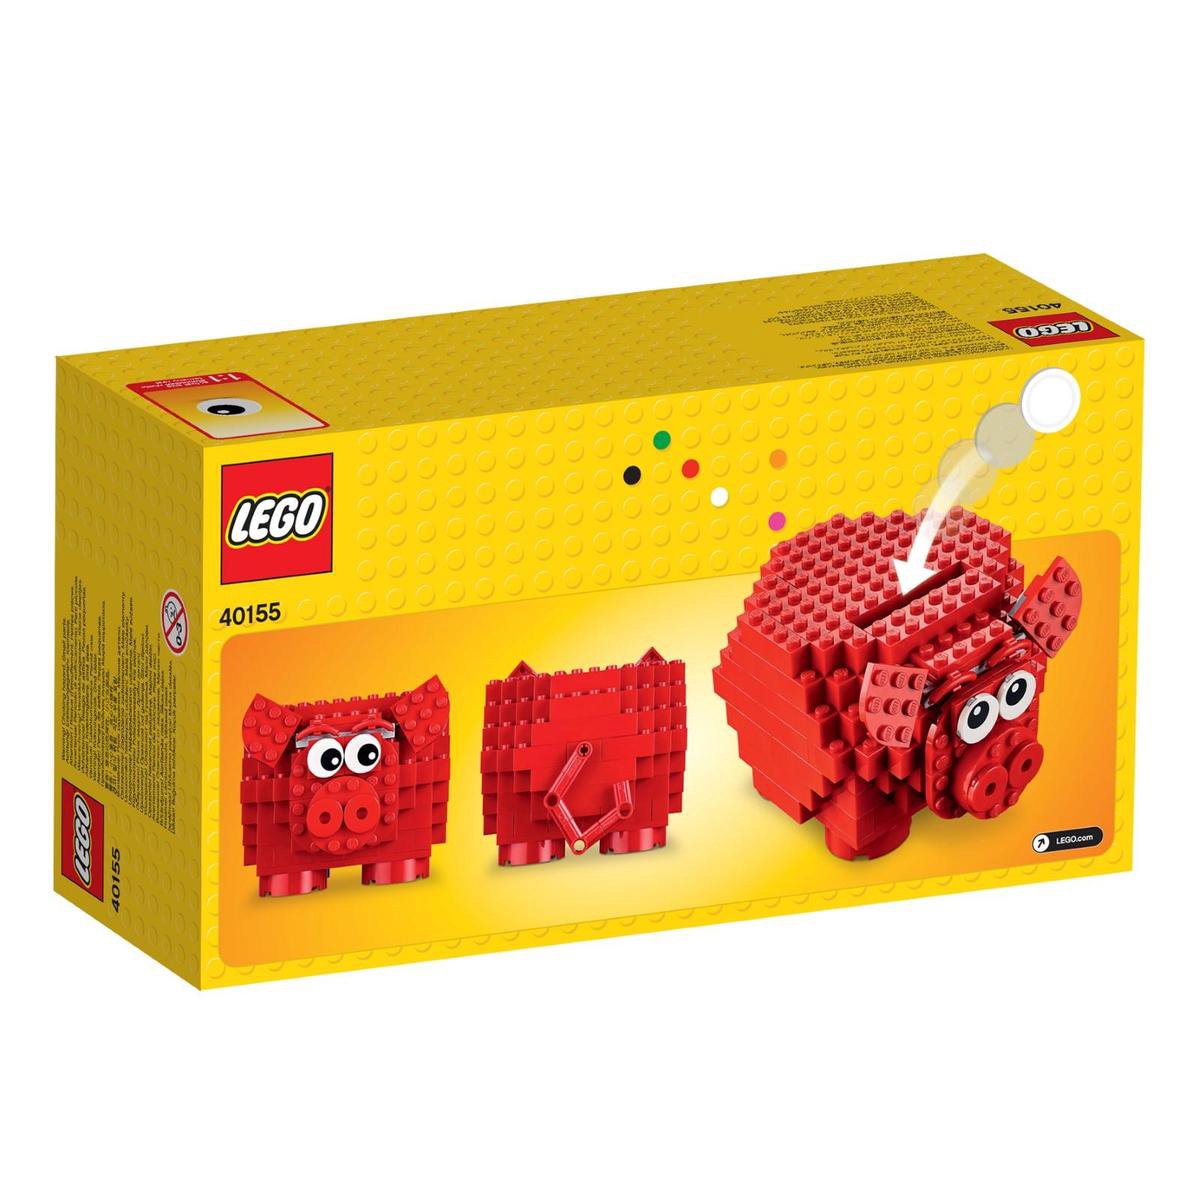 Zichzelf Mathis Concreet LEGO Spaarvarken 40155 | bol.com